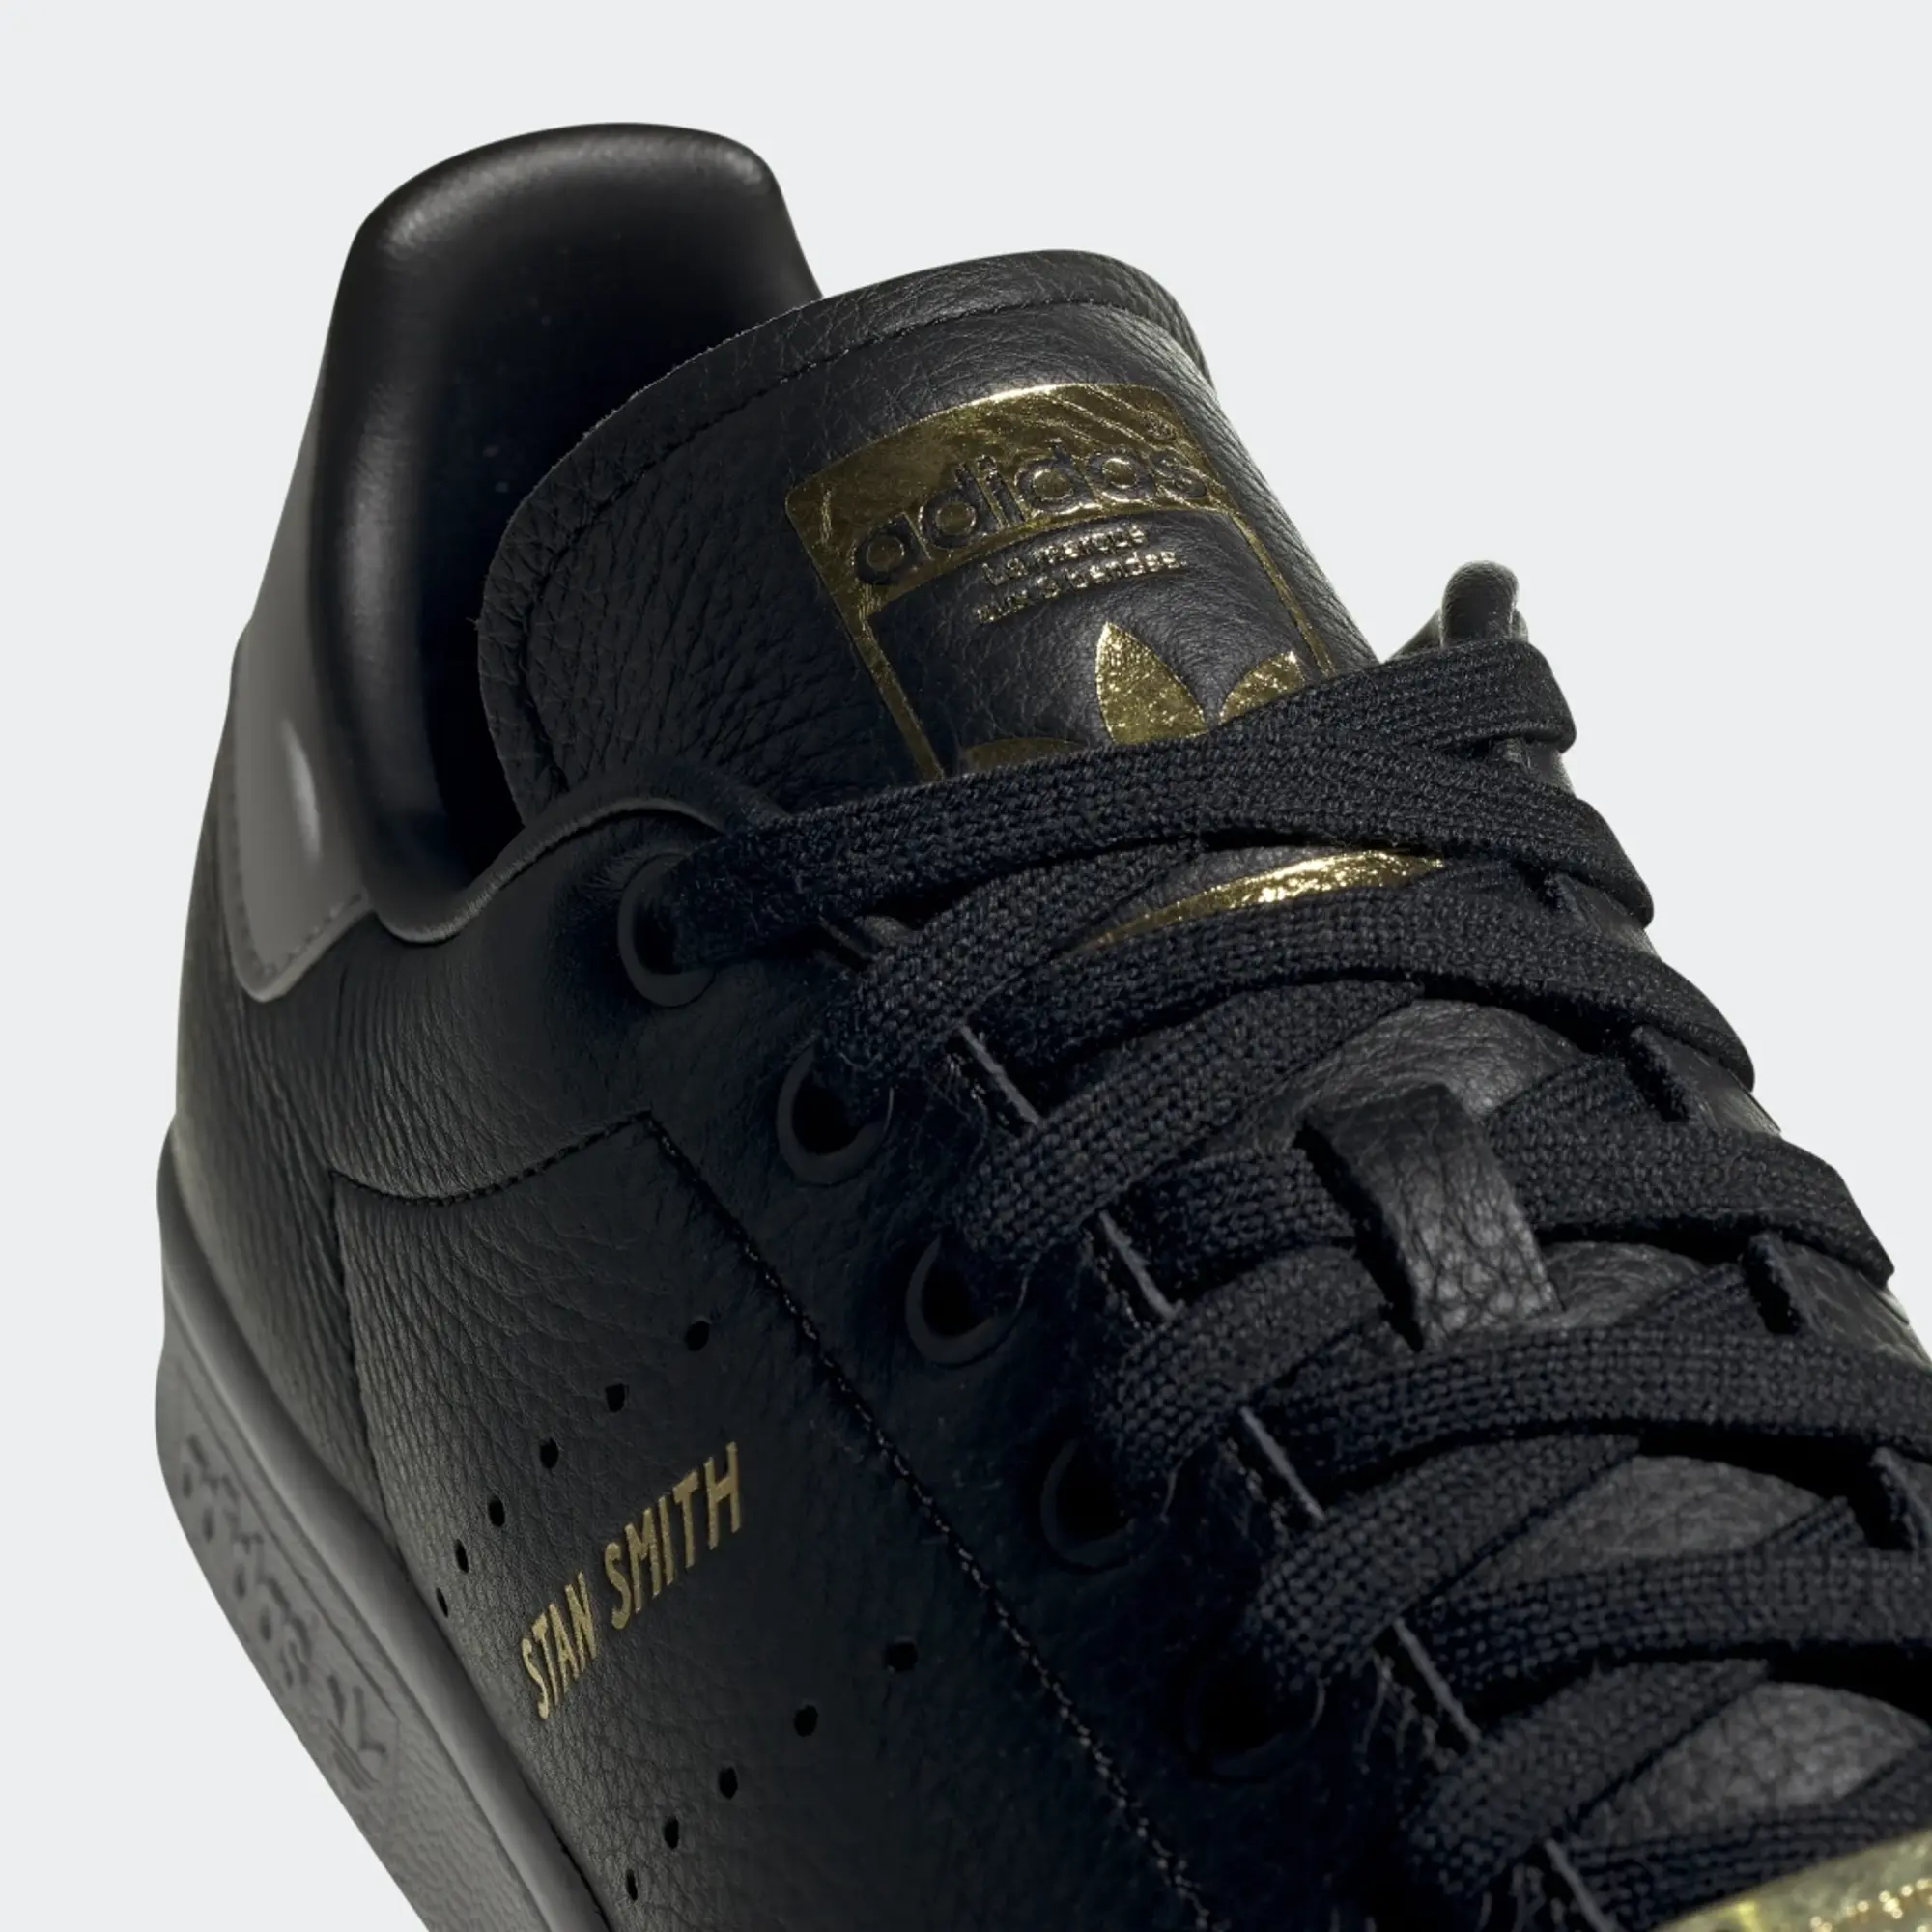 Adidas Originals Sneaker Stan Smith - Black